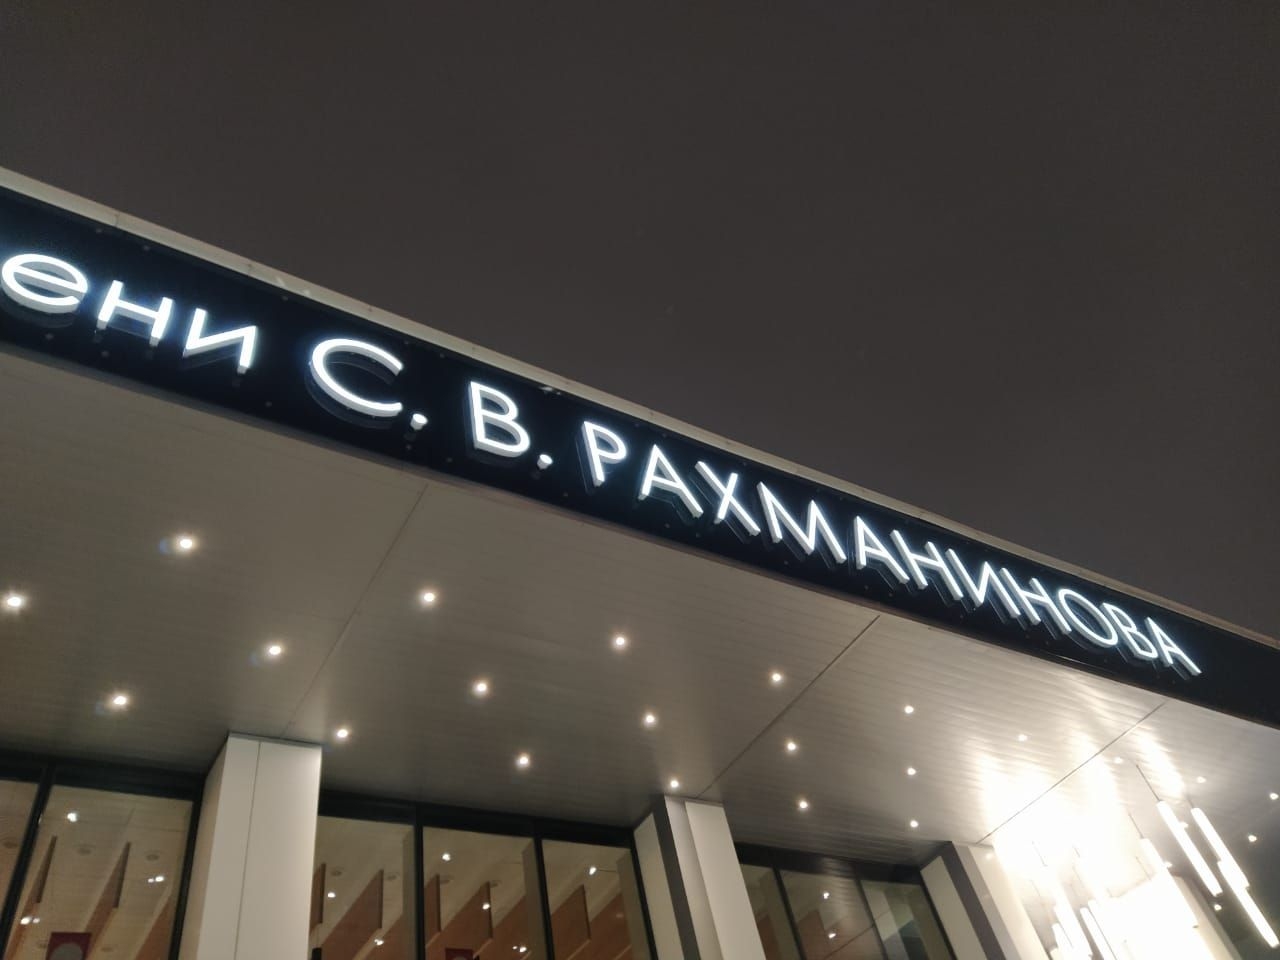 Концертный зал имени Рахманинова Москва, Россия